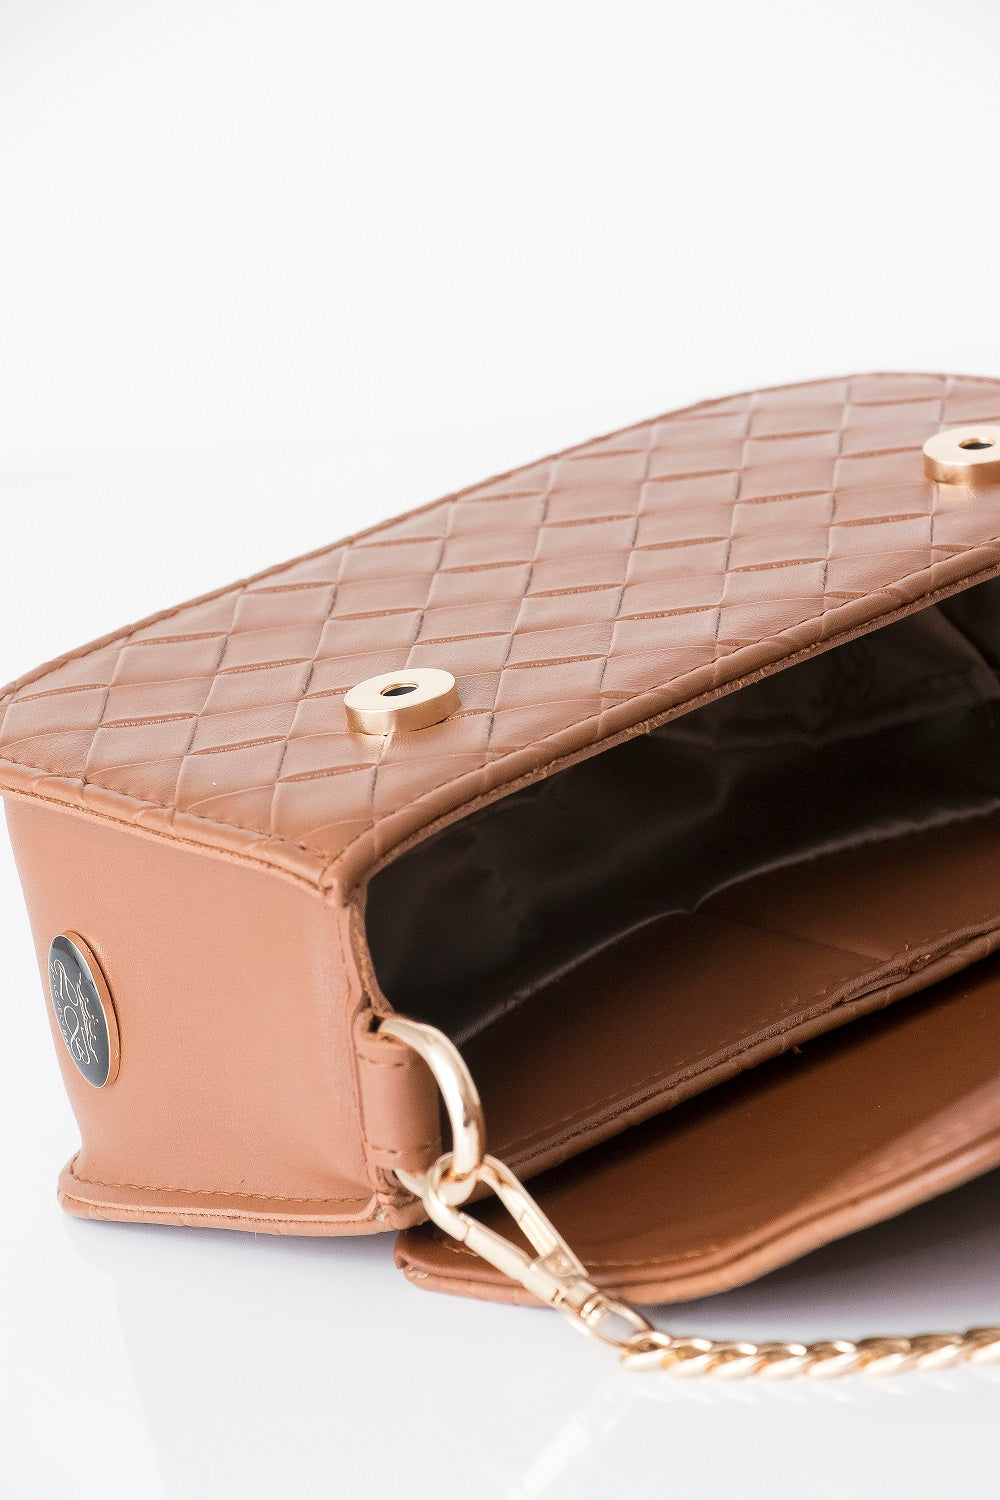 Best handbag for diva's women - BAG - PIA - CAMEL GOLD